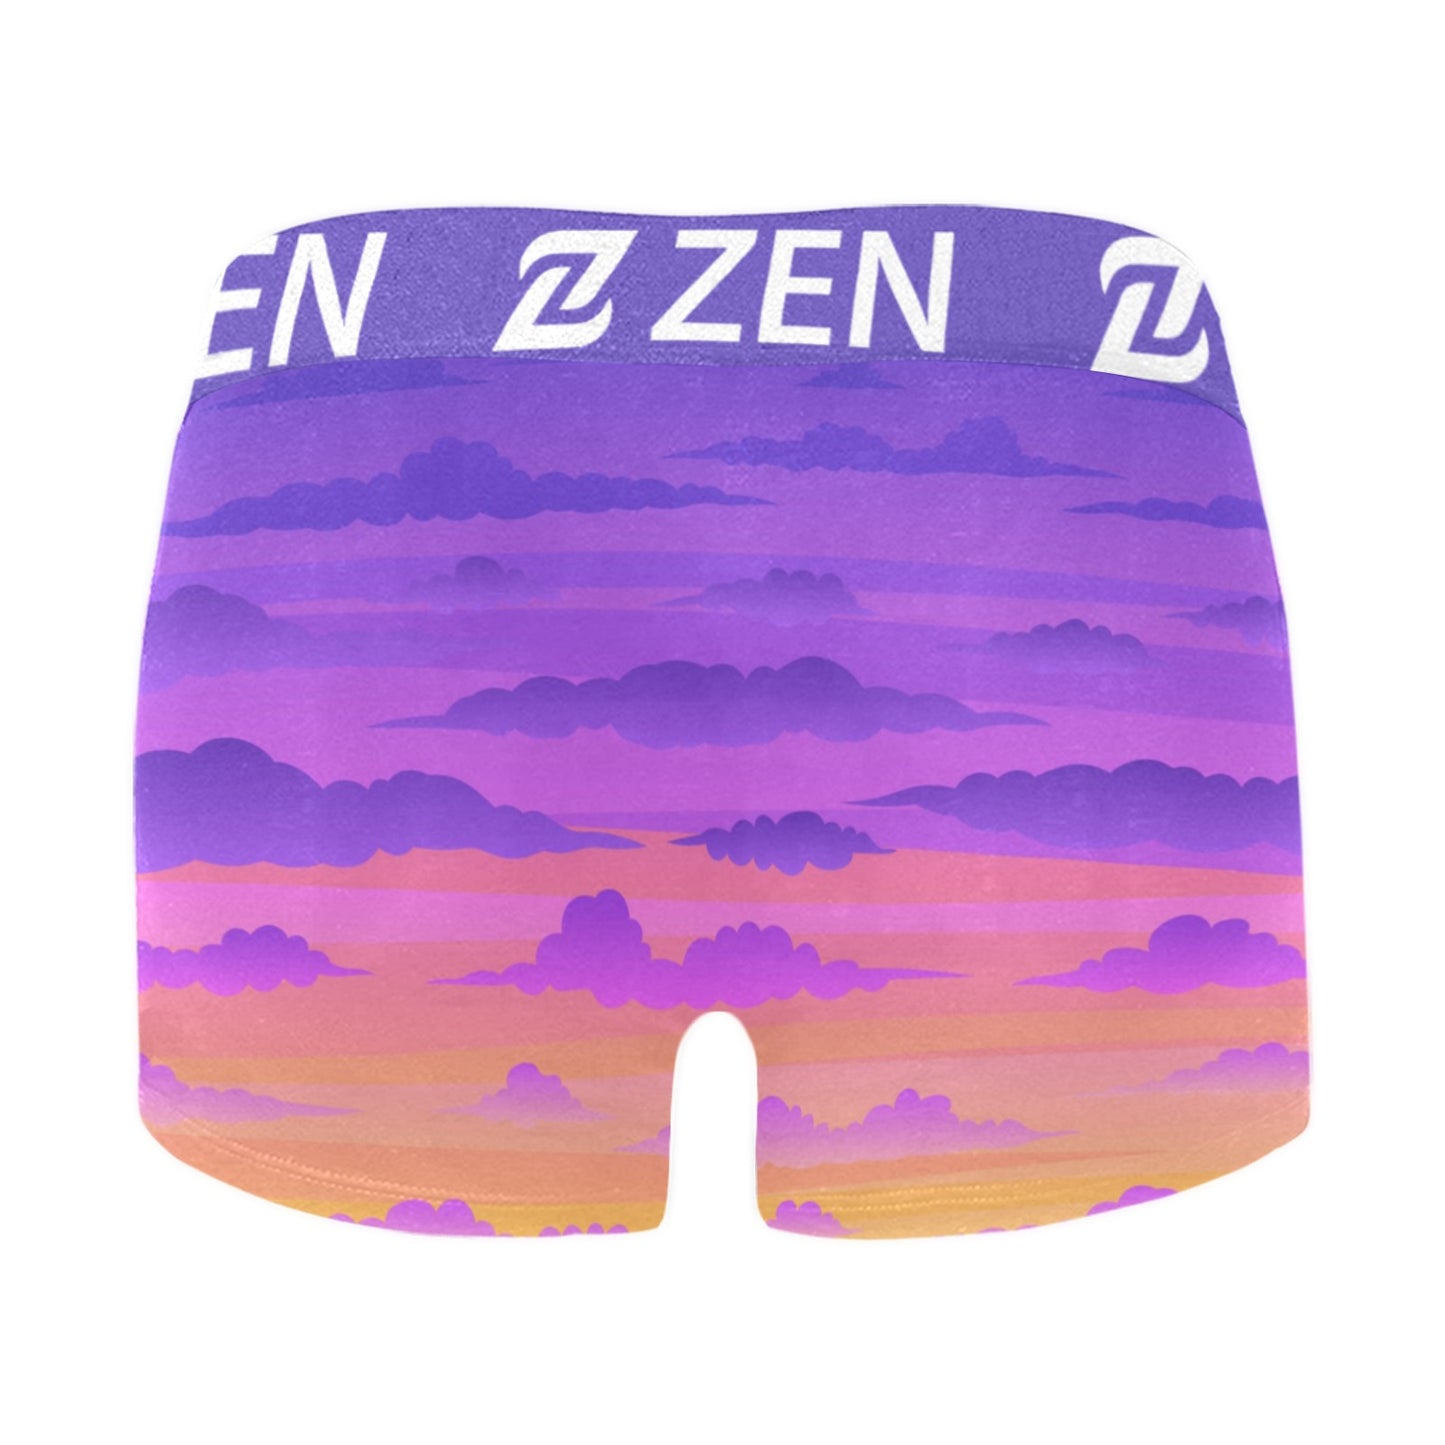 Zen Waistband - Clouds 1